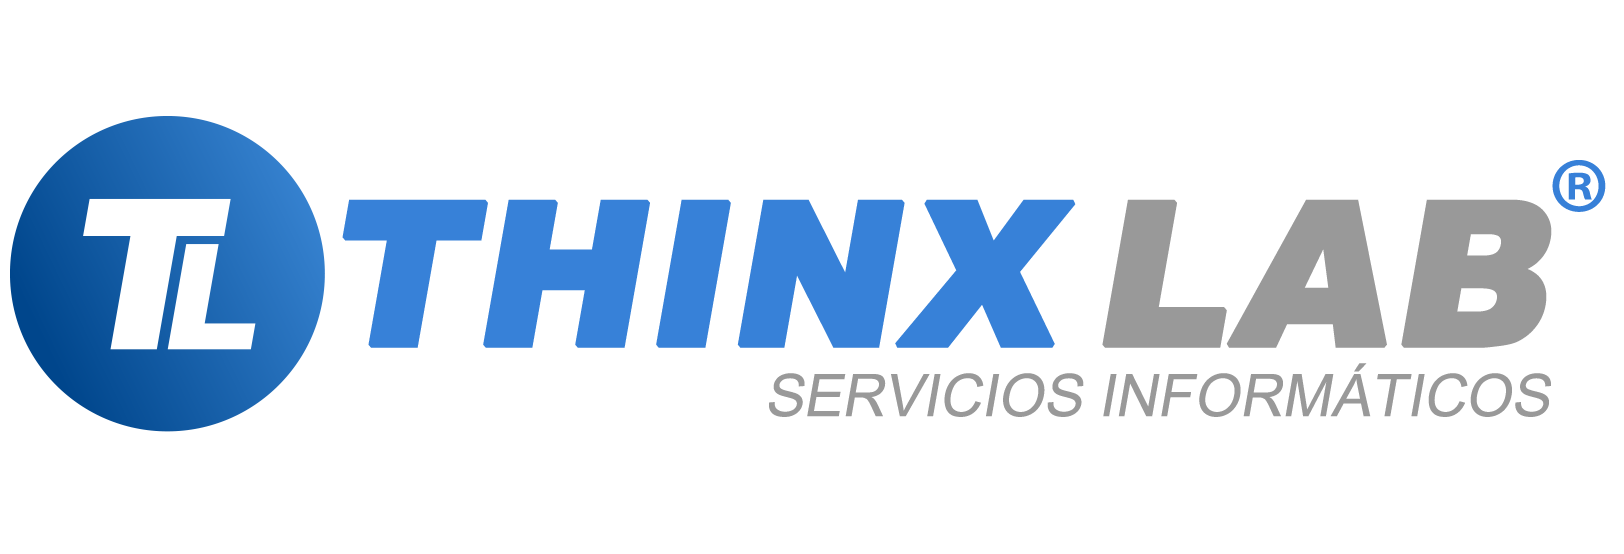 THINX LAB - Servicios Informáticos